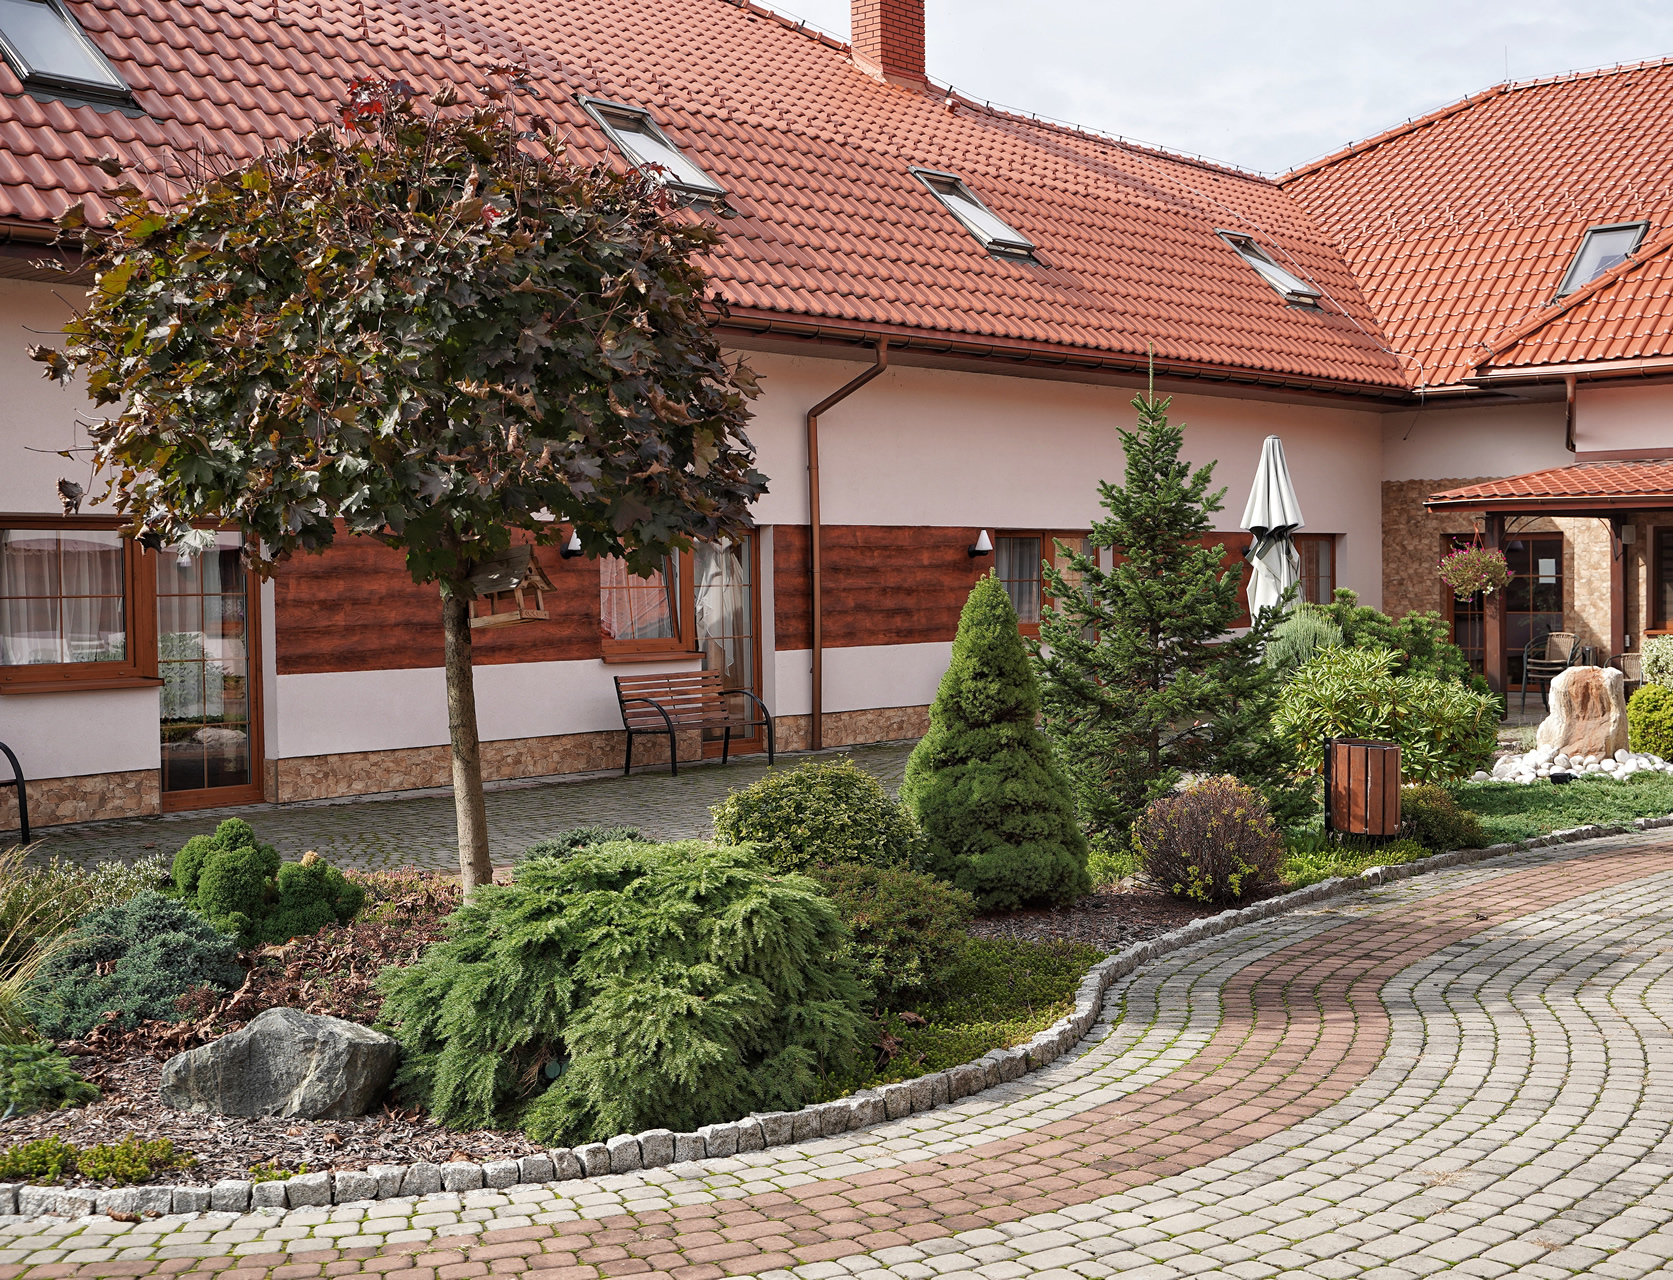 Dom Spokojnej Starości GWAREK zlokalizowany w okolicach Wodzisławia.